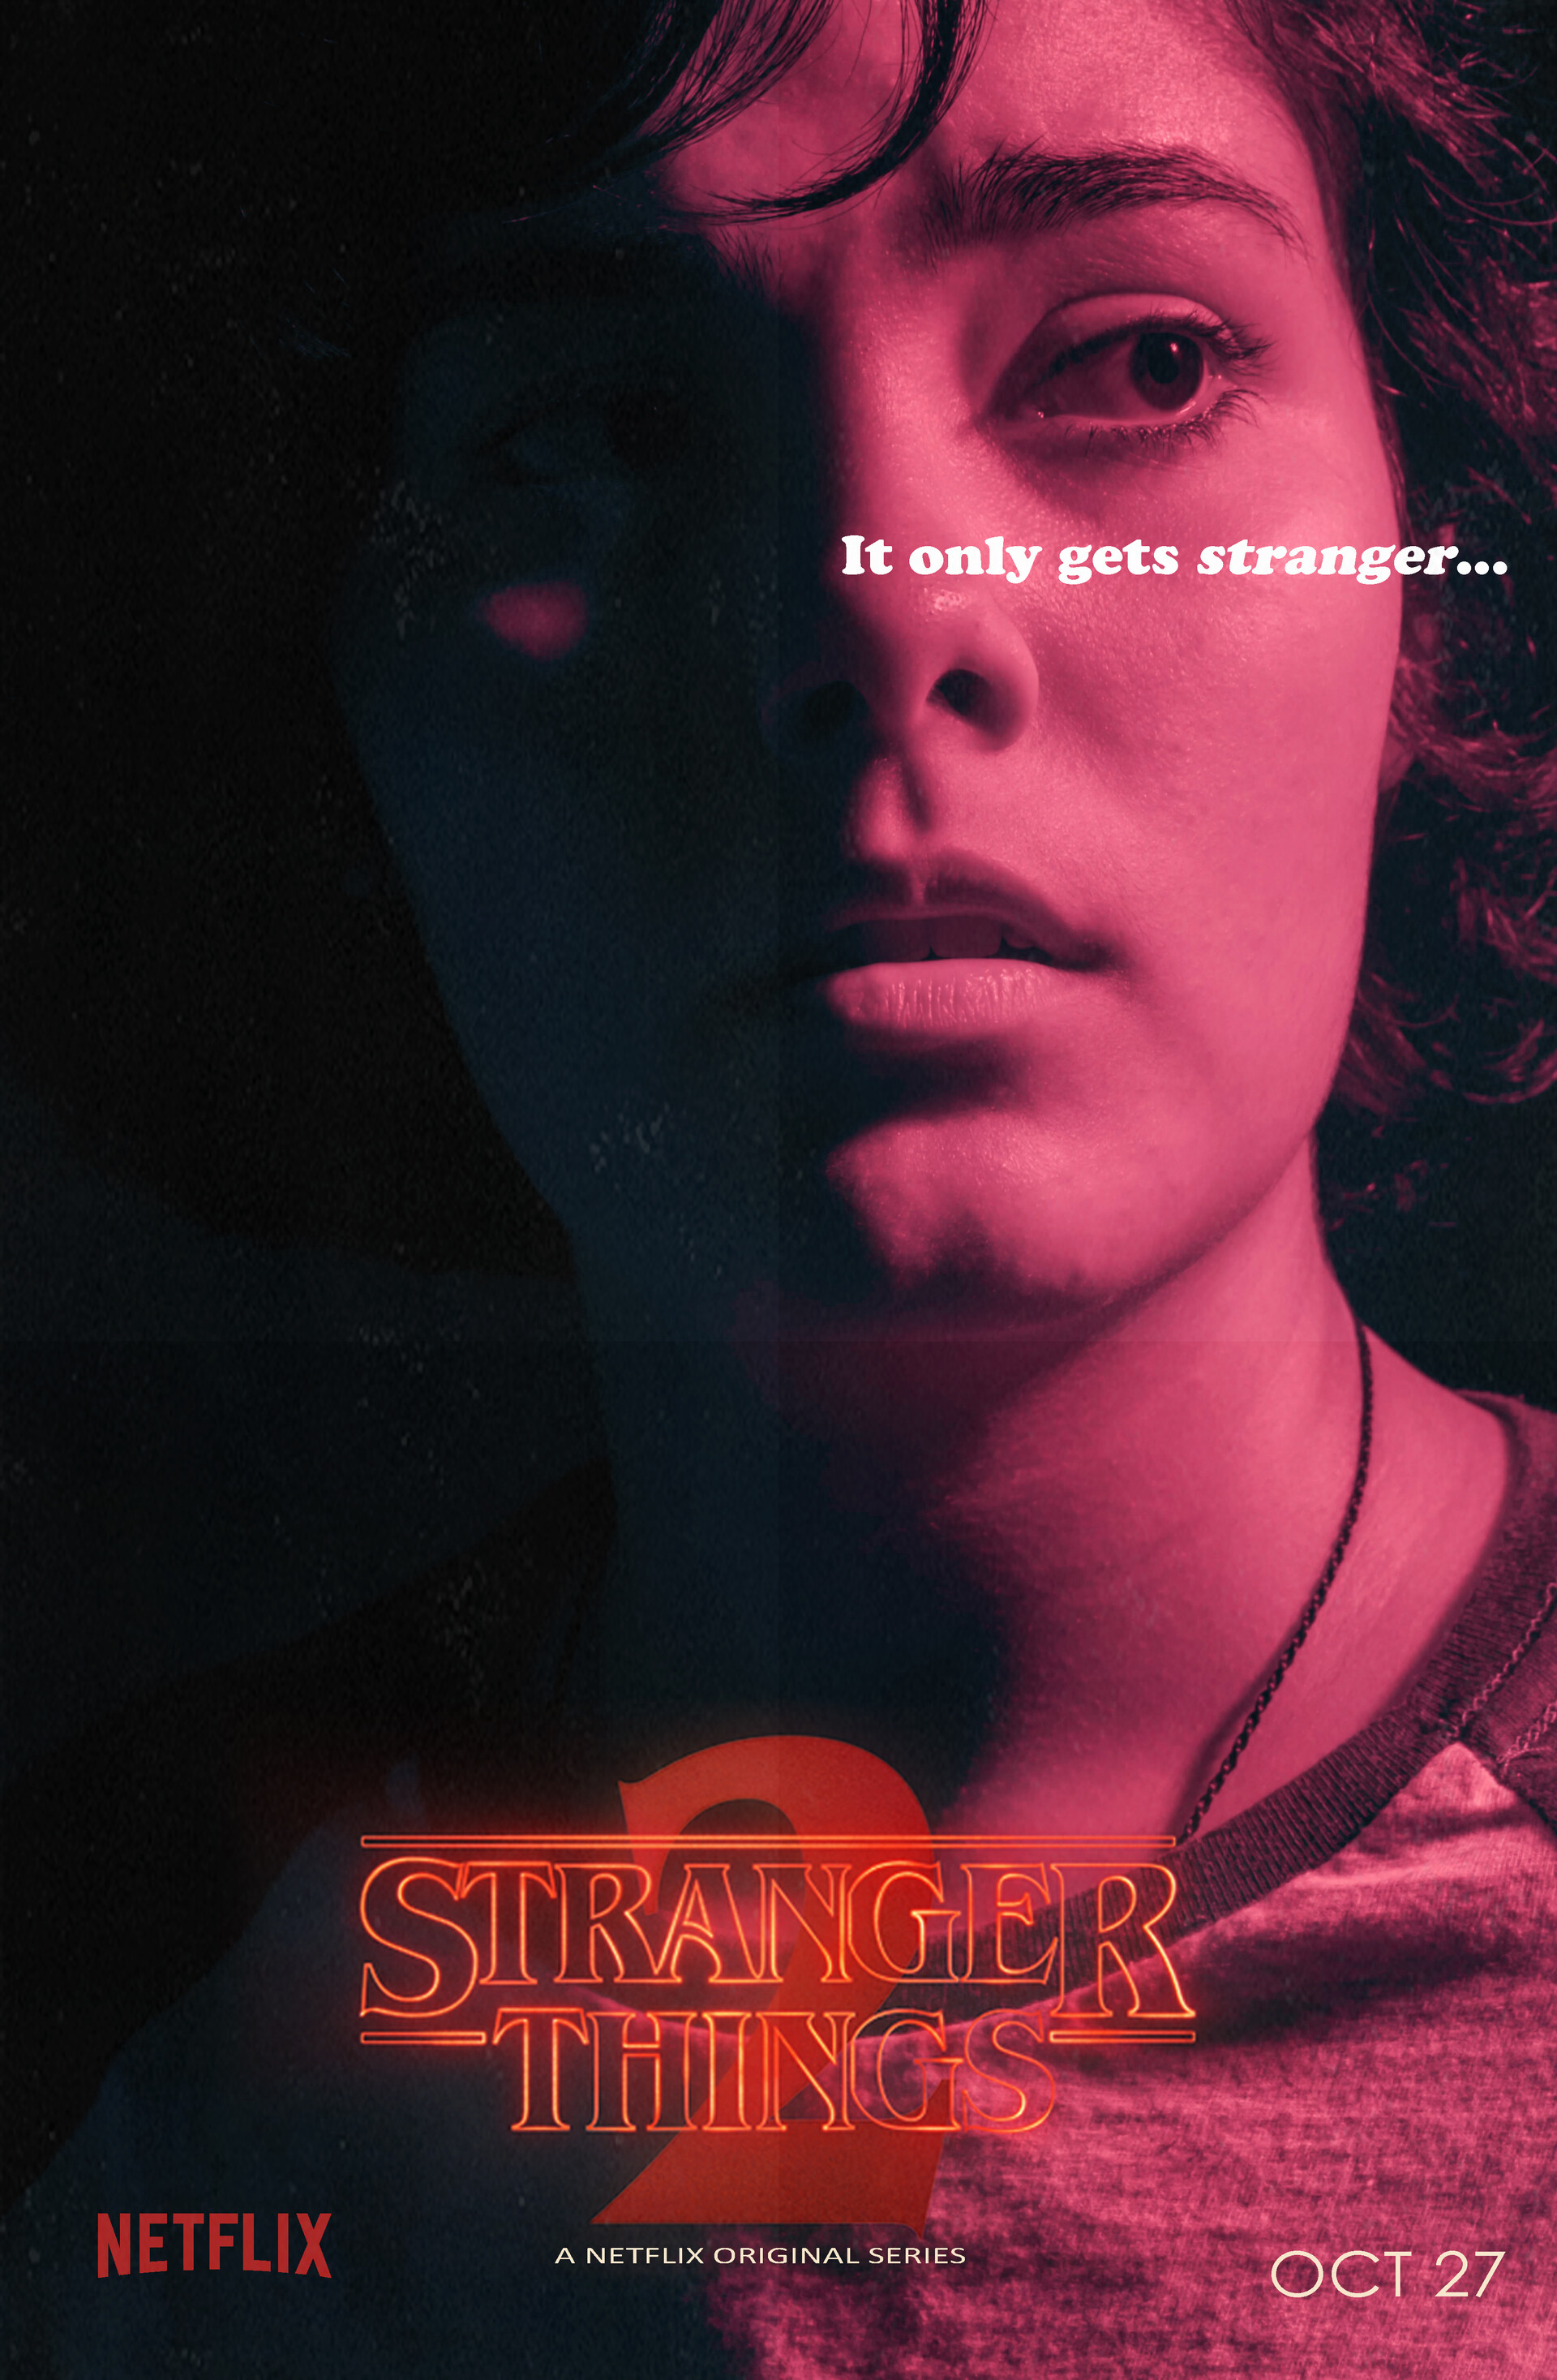 ArtStation - Stranger Things Poster